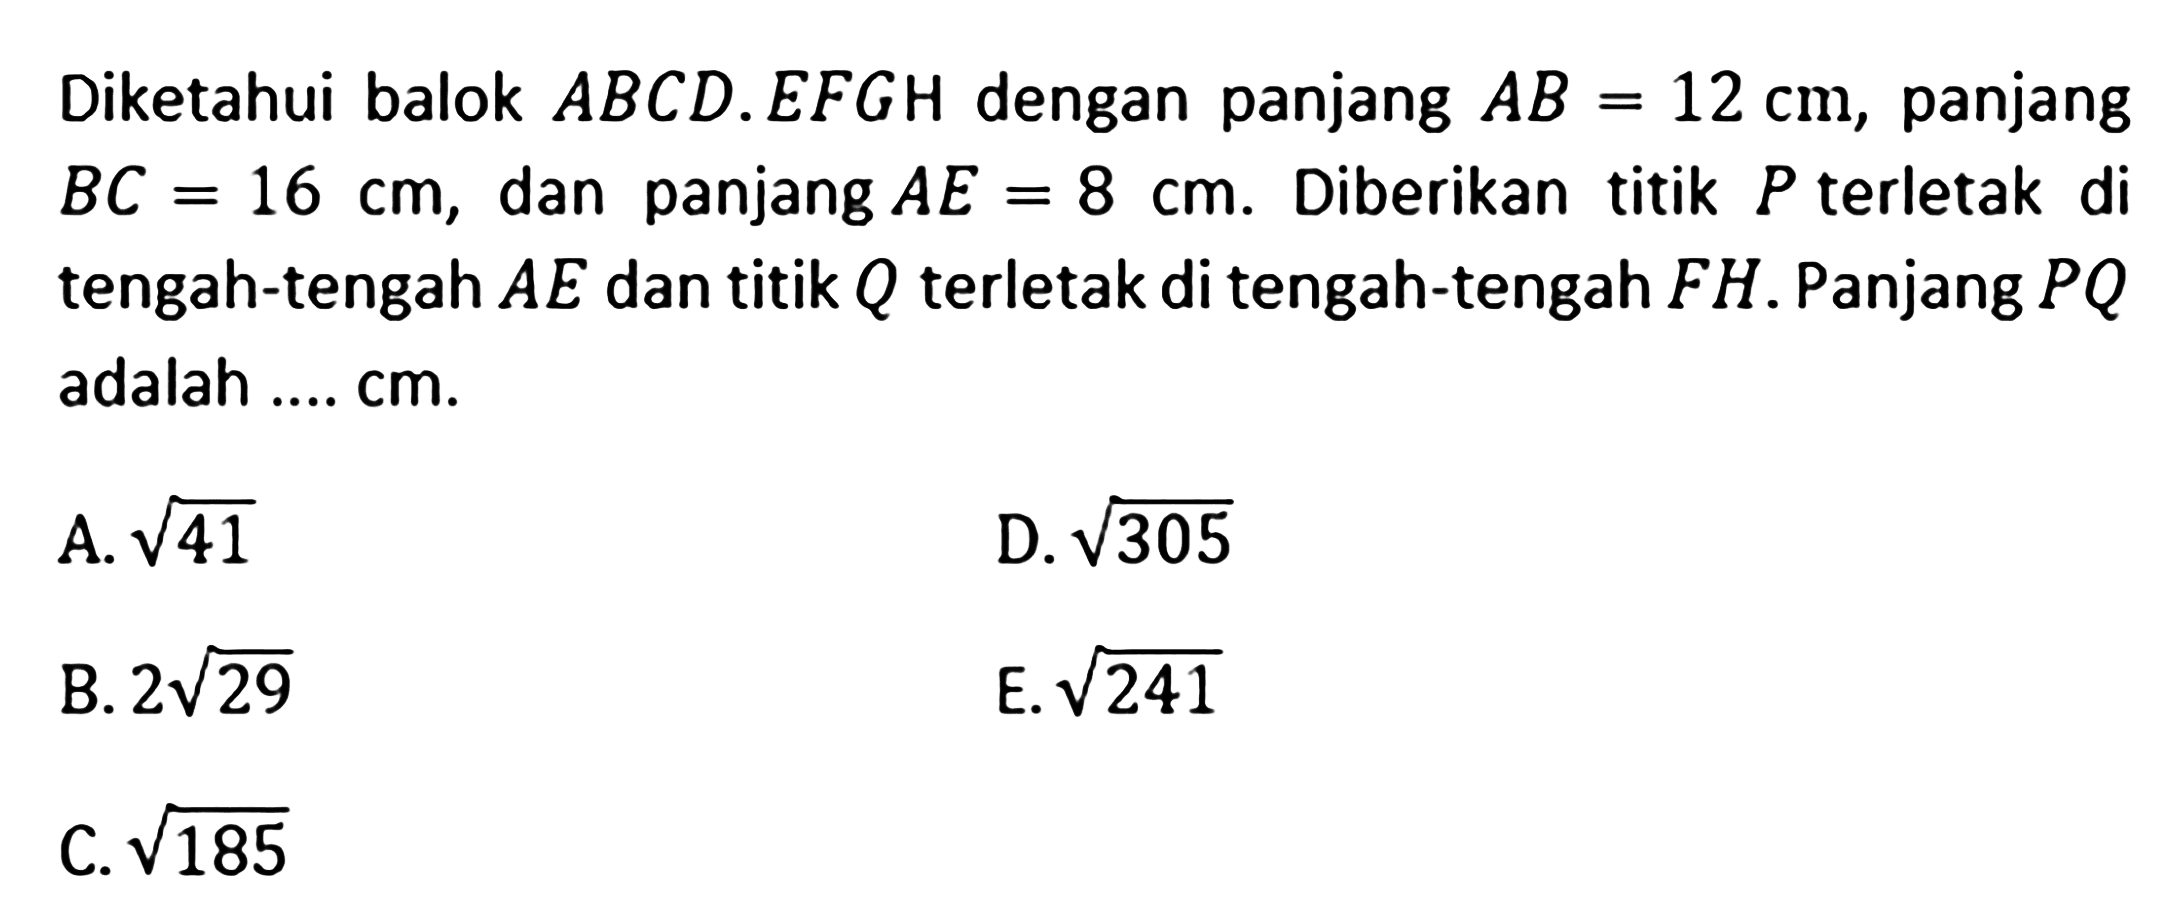 Diketahui balok ABCD.EFGH dengan panjang AB=12 cm, panjang BC=16 cm, dan panjang AE=8 cm. Diberikan titik P terletak di tengah-tengah AE dan titik Q terletak di tengah-tengah FH. Panjang PQ adalah .... cm. A. akar(41) D. akar(305) B. 2 akar(29) E. akar(241) C. akar(185)